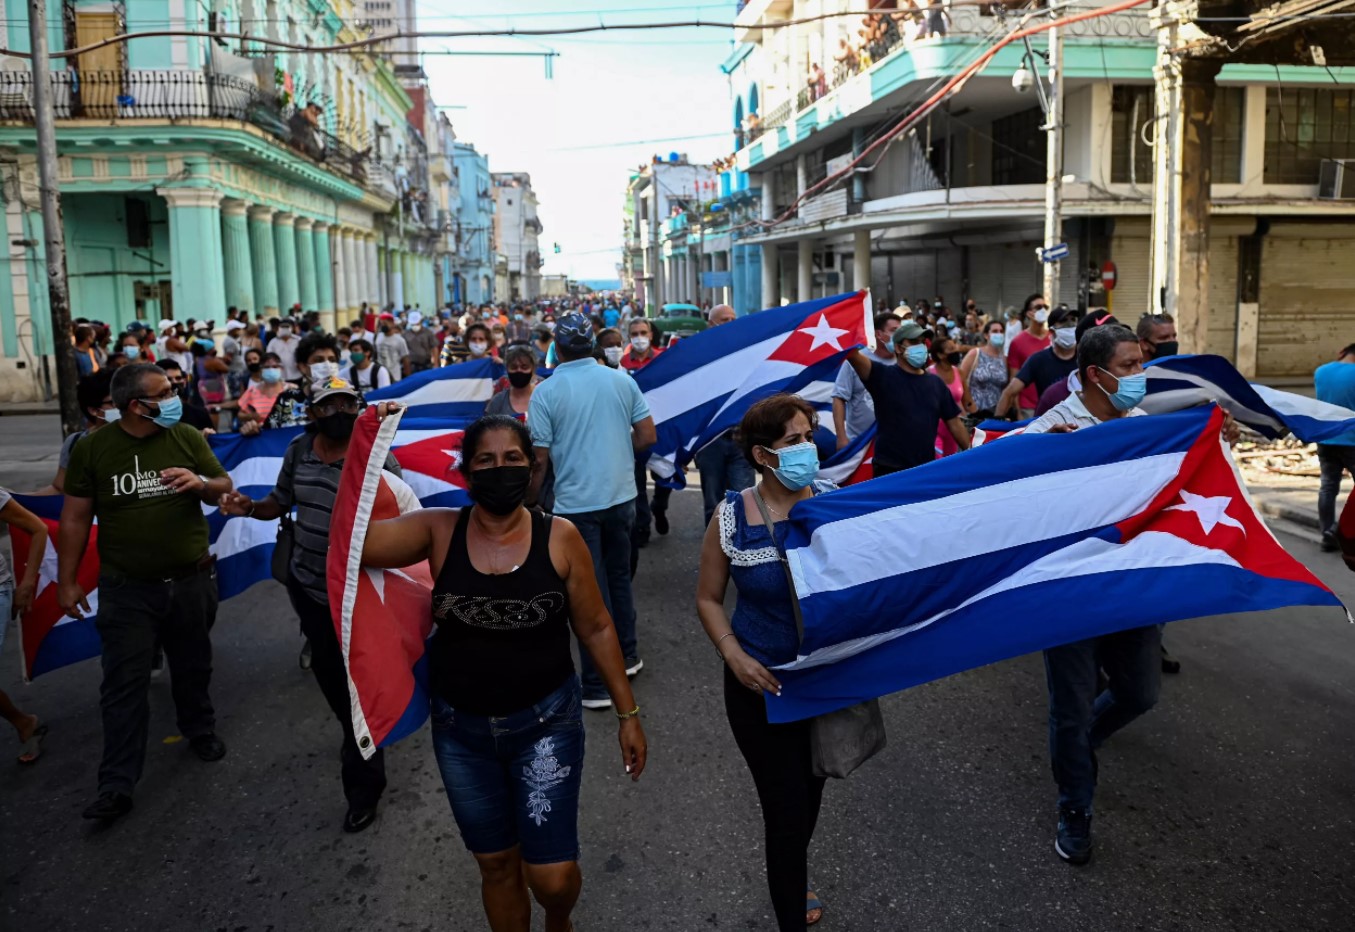 Người biểu tình chống chính phủ ở thủ đô Havana, hô khẩu hiệu "Đảo đảo độc tài" và "Chúng tôi muốn tự do". Ảnh: YAMIL LAGE/AFP VIA GETTY IMAGES.